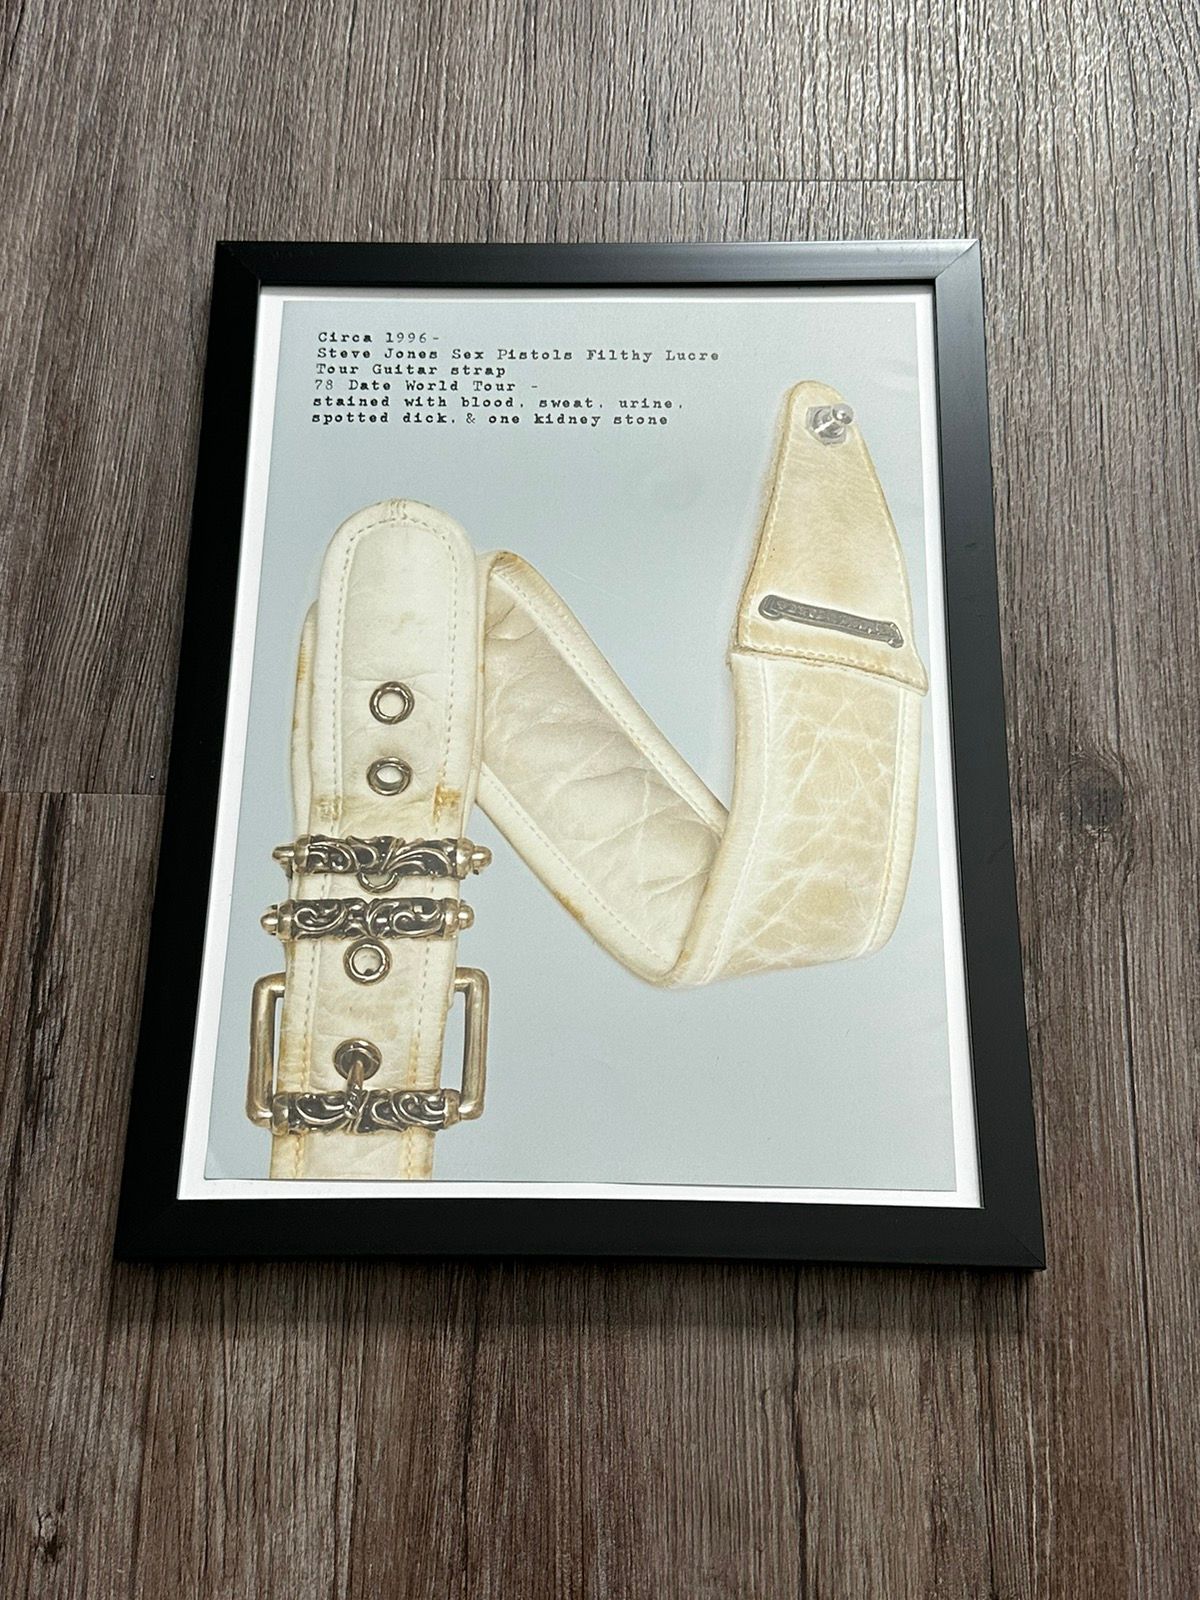 Pre-owned Chrome Hearts Sex Pistols Bracelet 9x12 Framed Poster In Off White